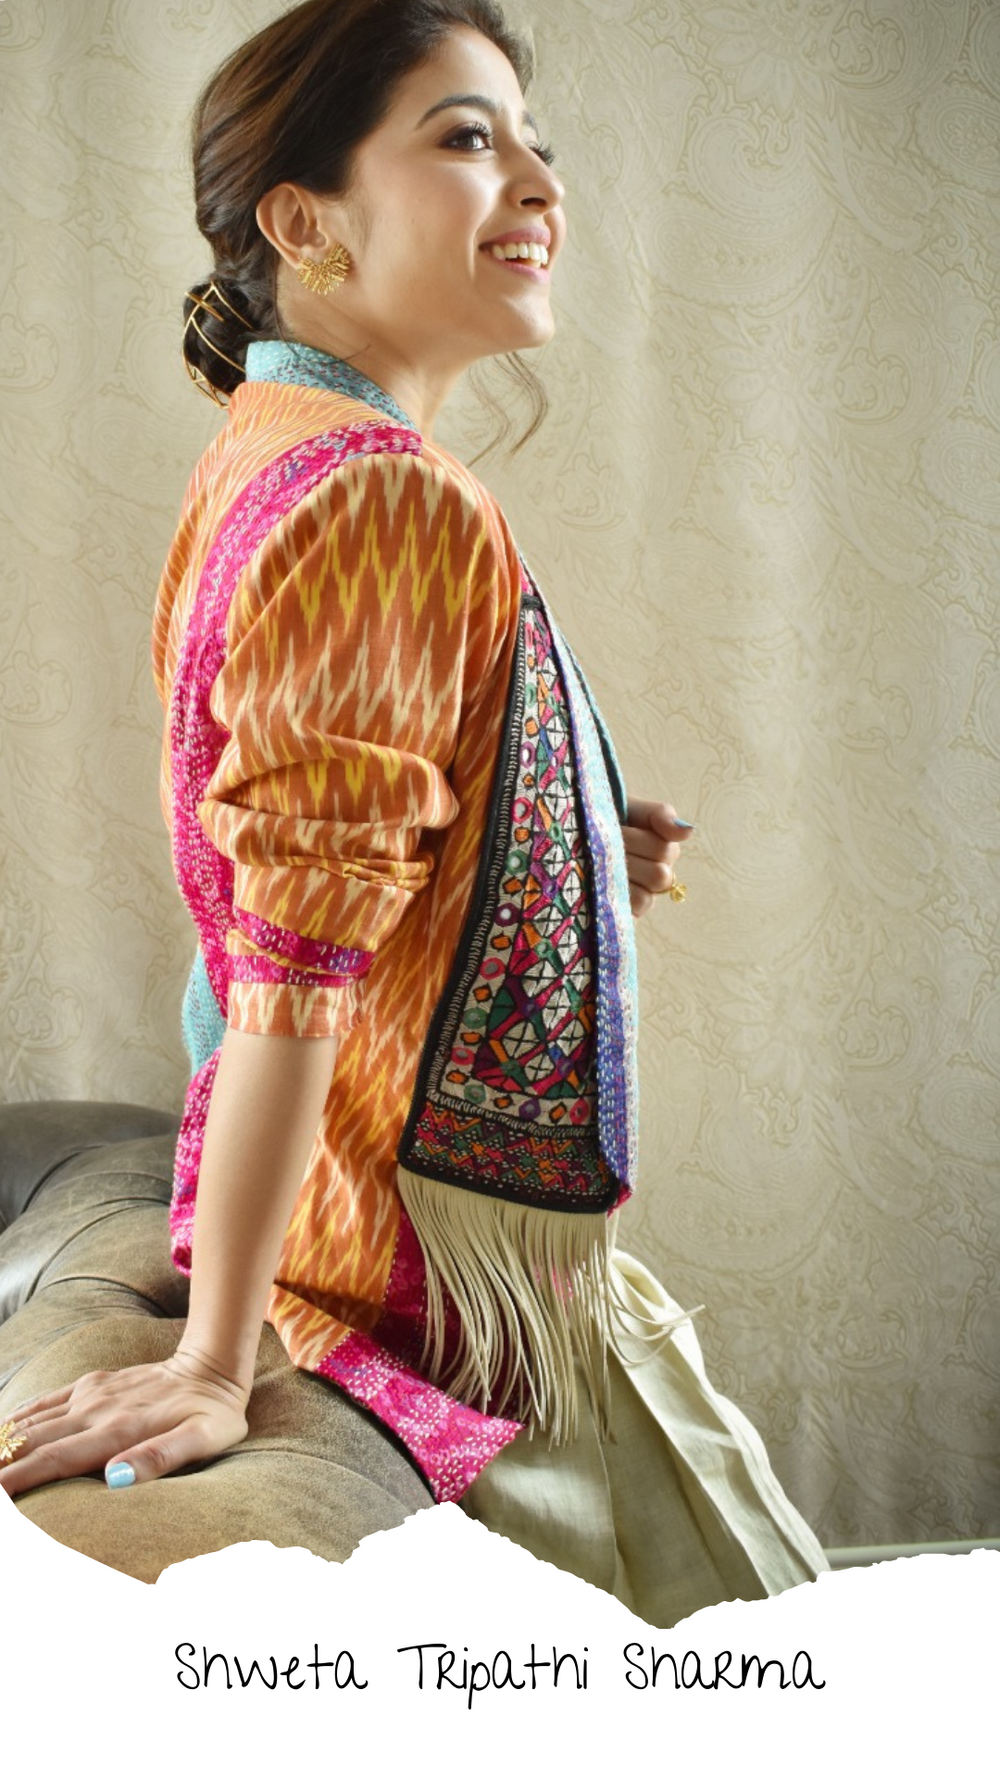 Shweta Tripathi Sharma wearing Betrue Dress